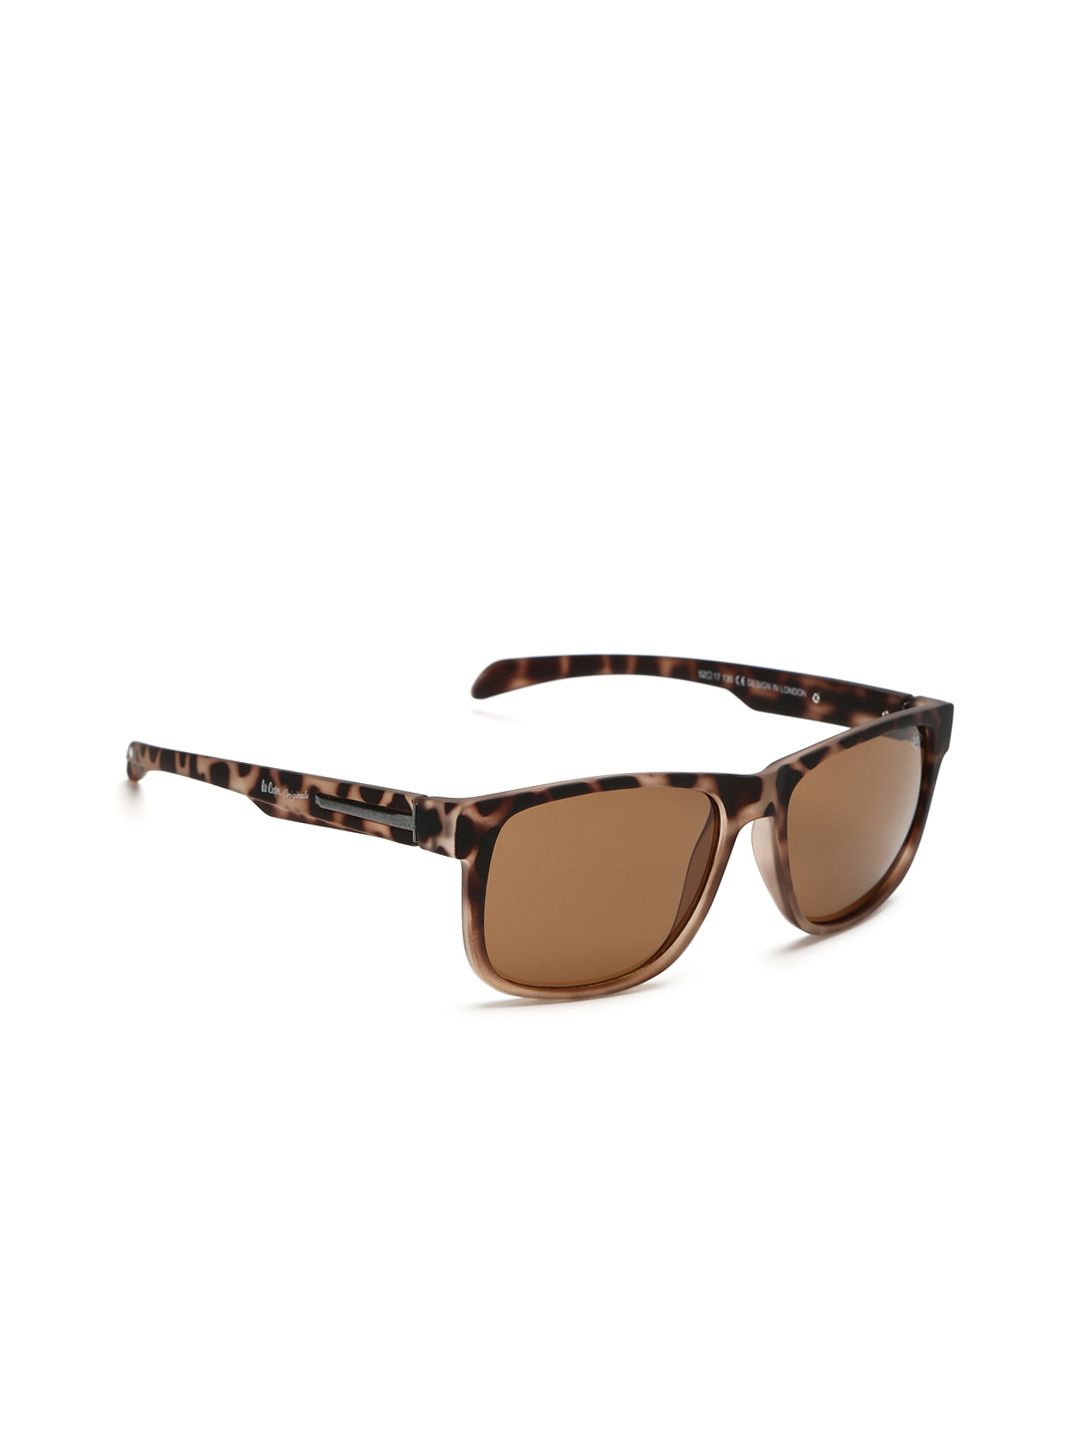 Lee Cooper Originals Unisex Sunglasses LC9064 Price in India